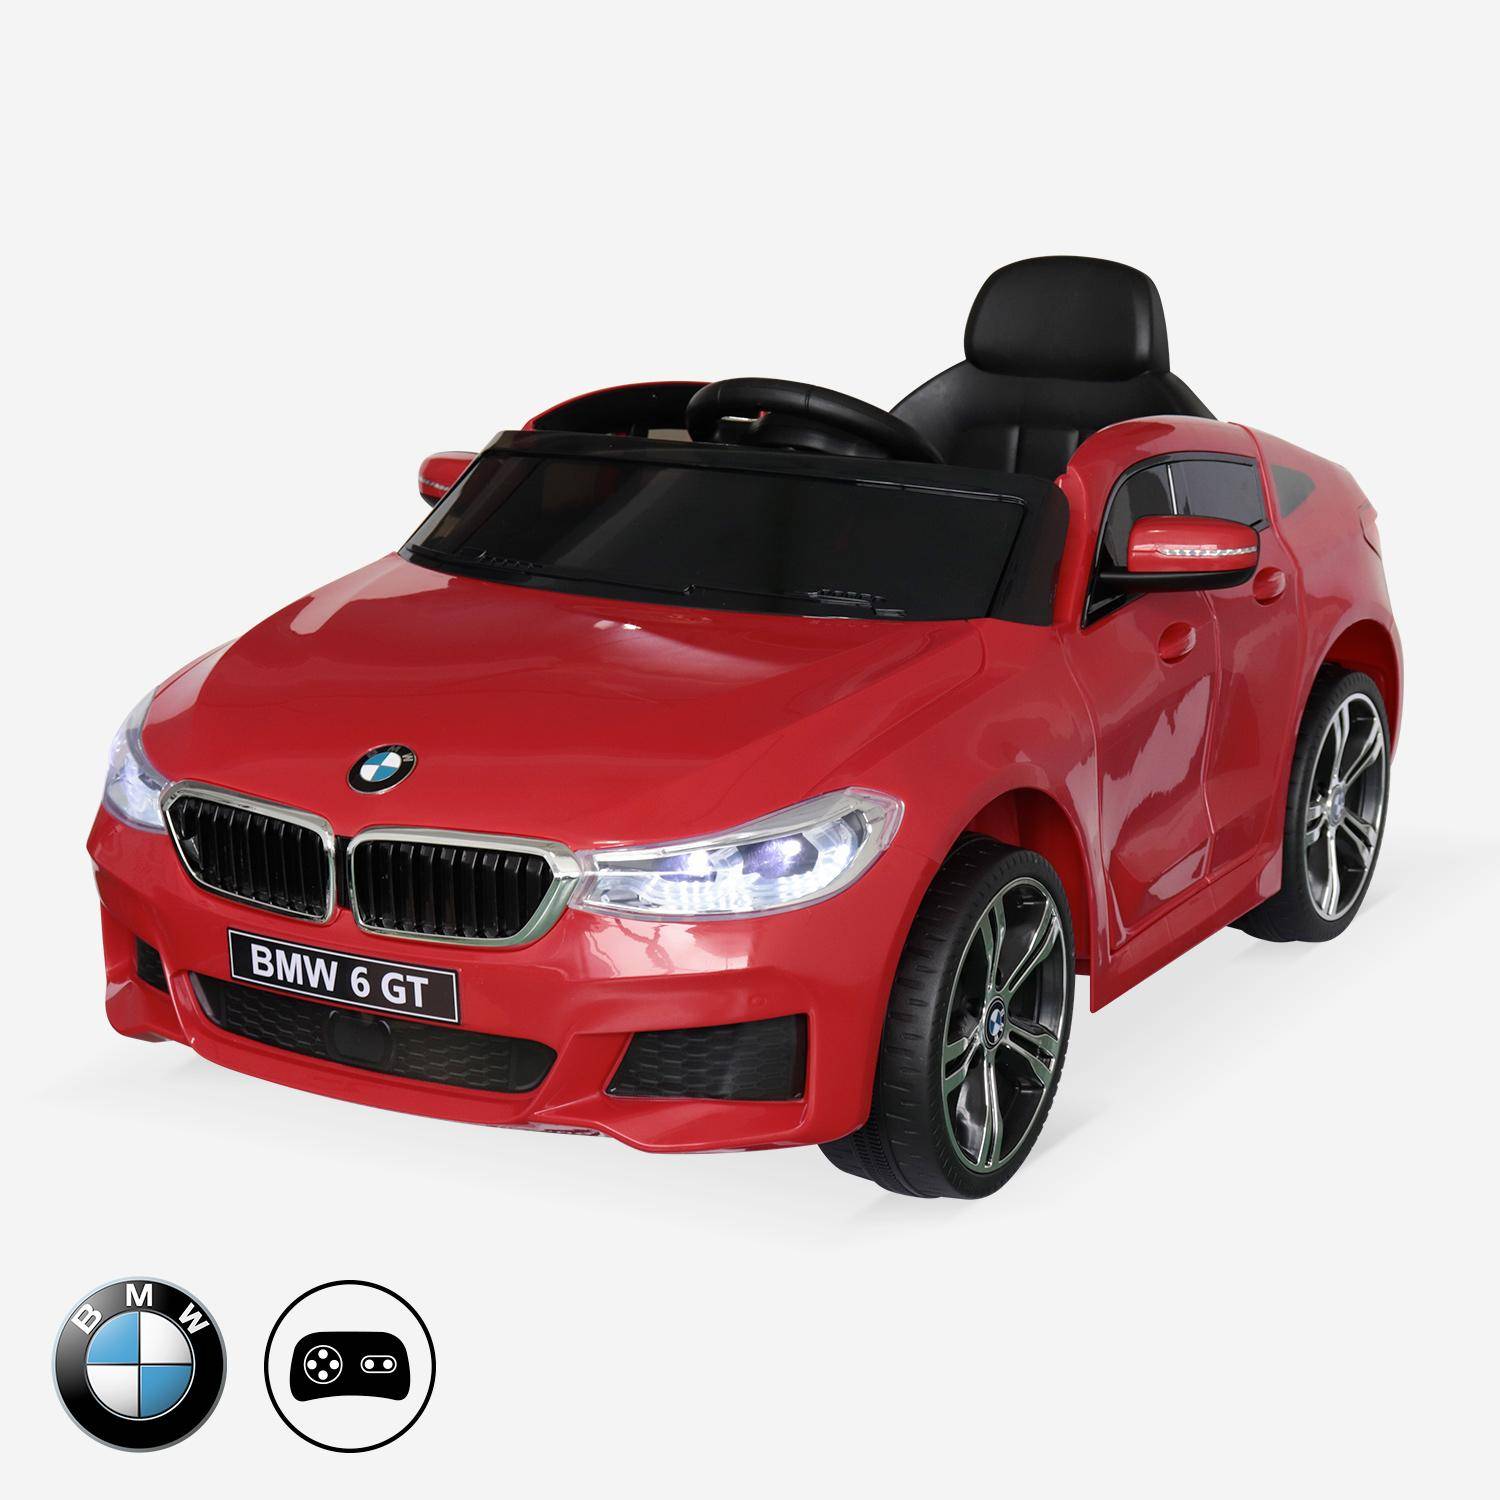 BMW Série 6 GT rouge, voiture électrique pour enfants 12V 4 Ah, 1 place, avec autoradio et télécommande,sweeek,Photo1